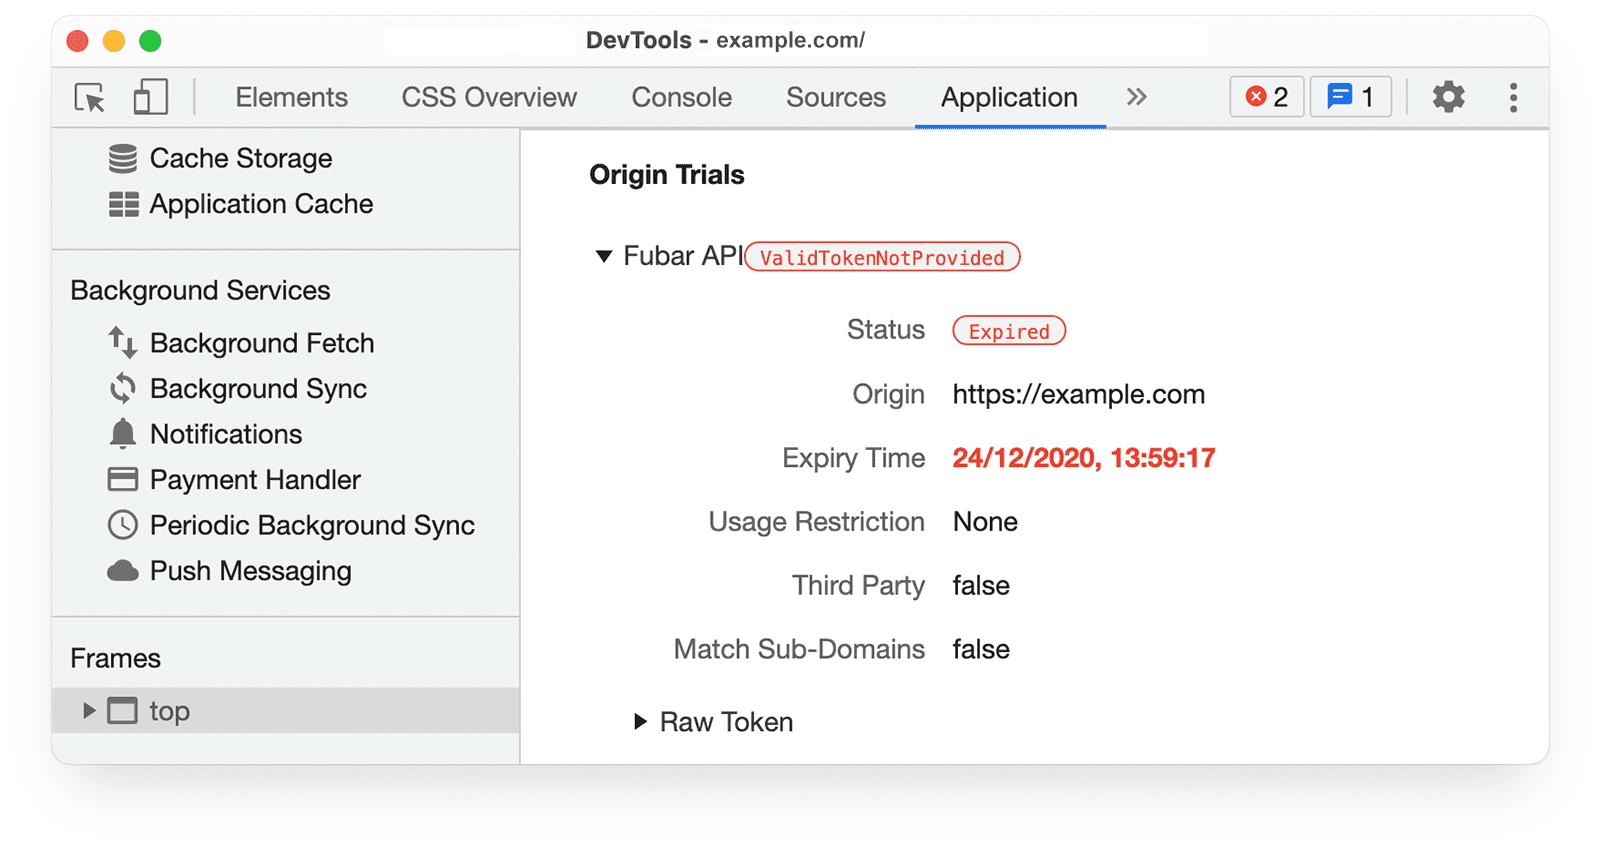 Chrome DevTools 
informações de testes de origem no painel do aplicativo mostrando o token expirado